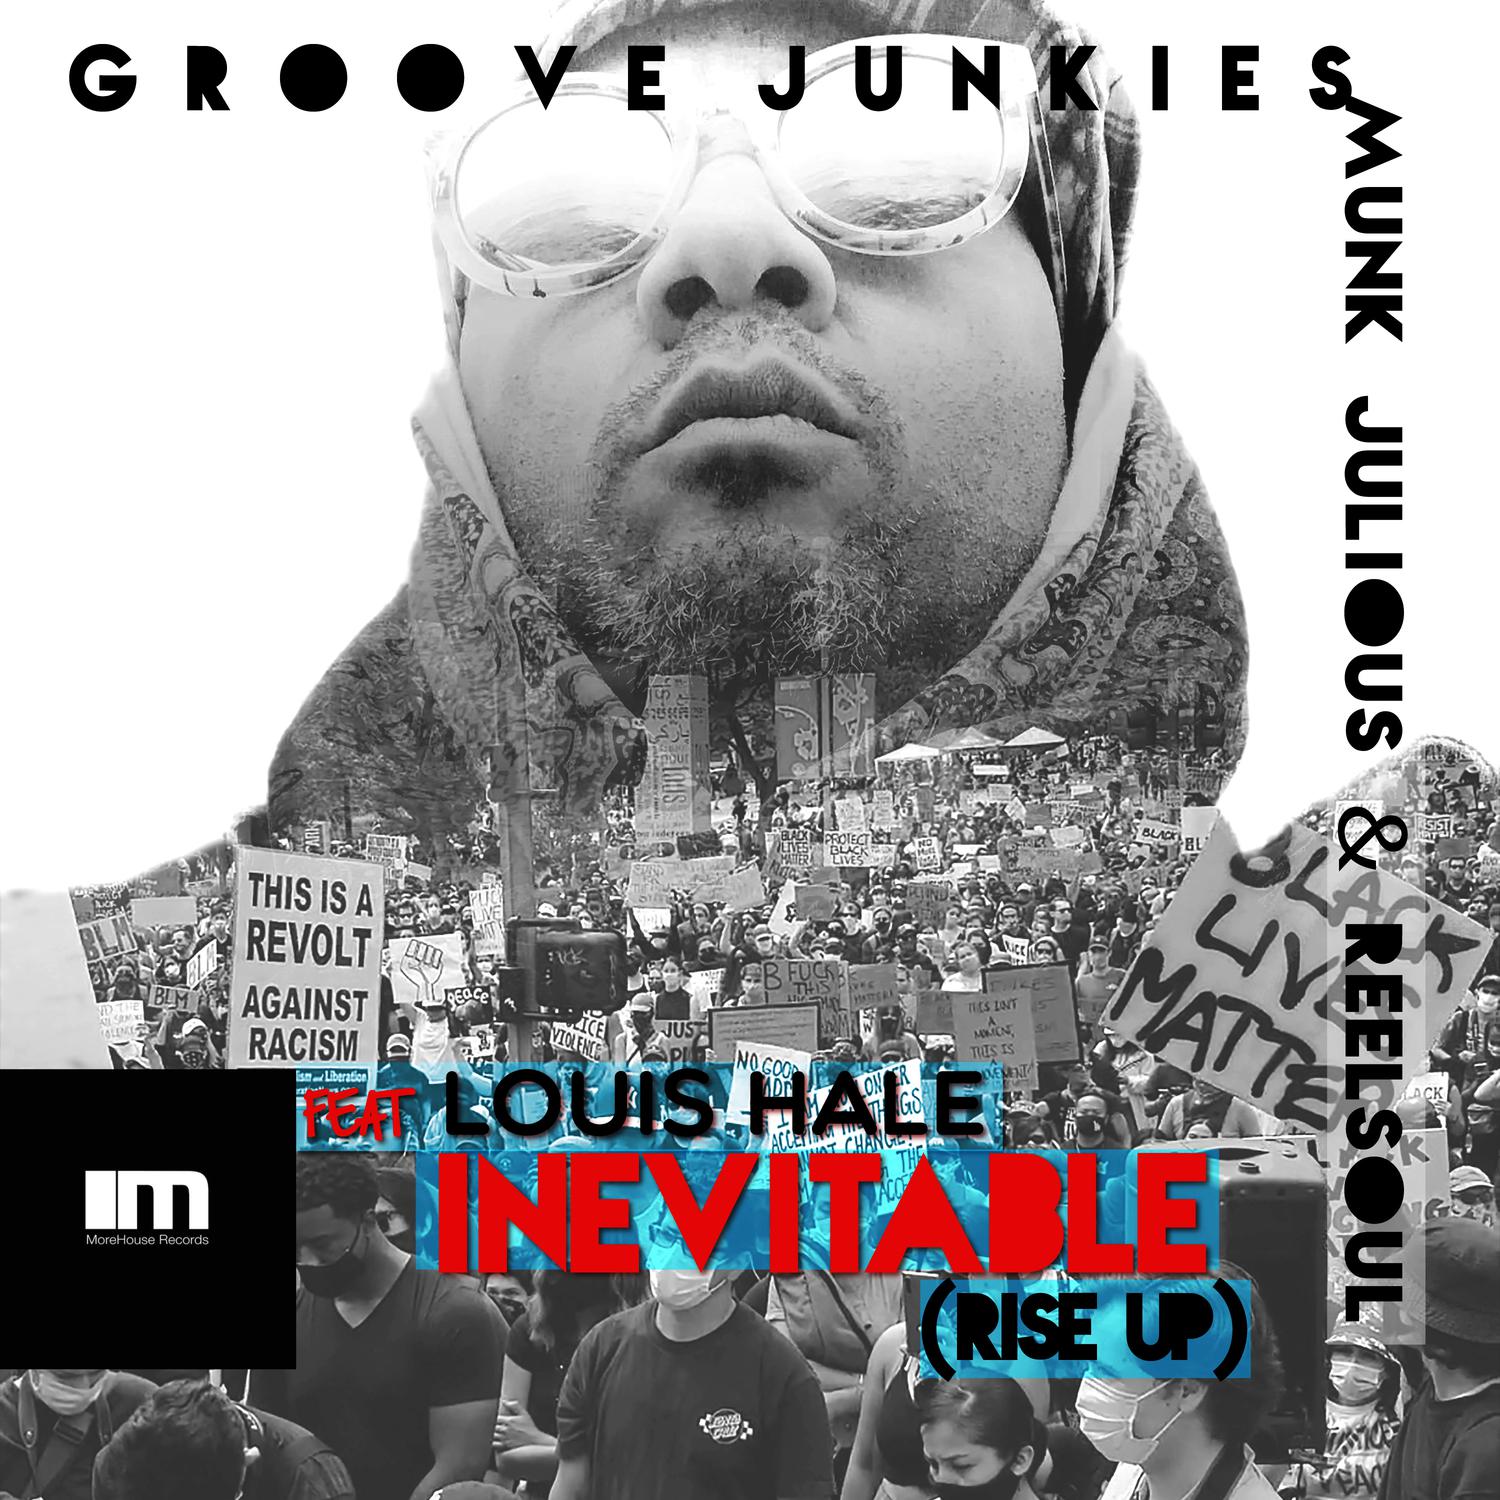 Groove Junkies - Inevitable (Rise up) (Groove Junkies, Reelsoul & Munk Julious Instrumental Mix)